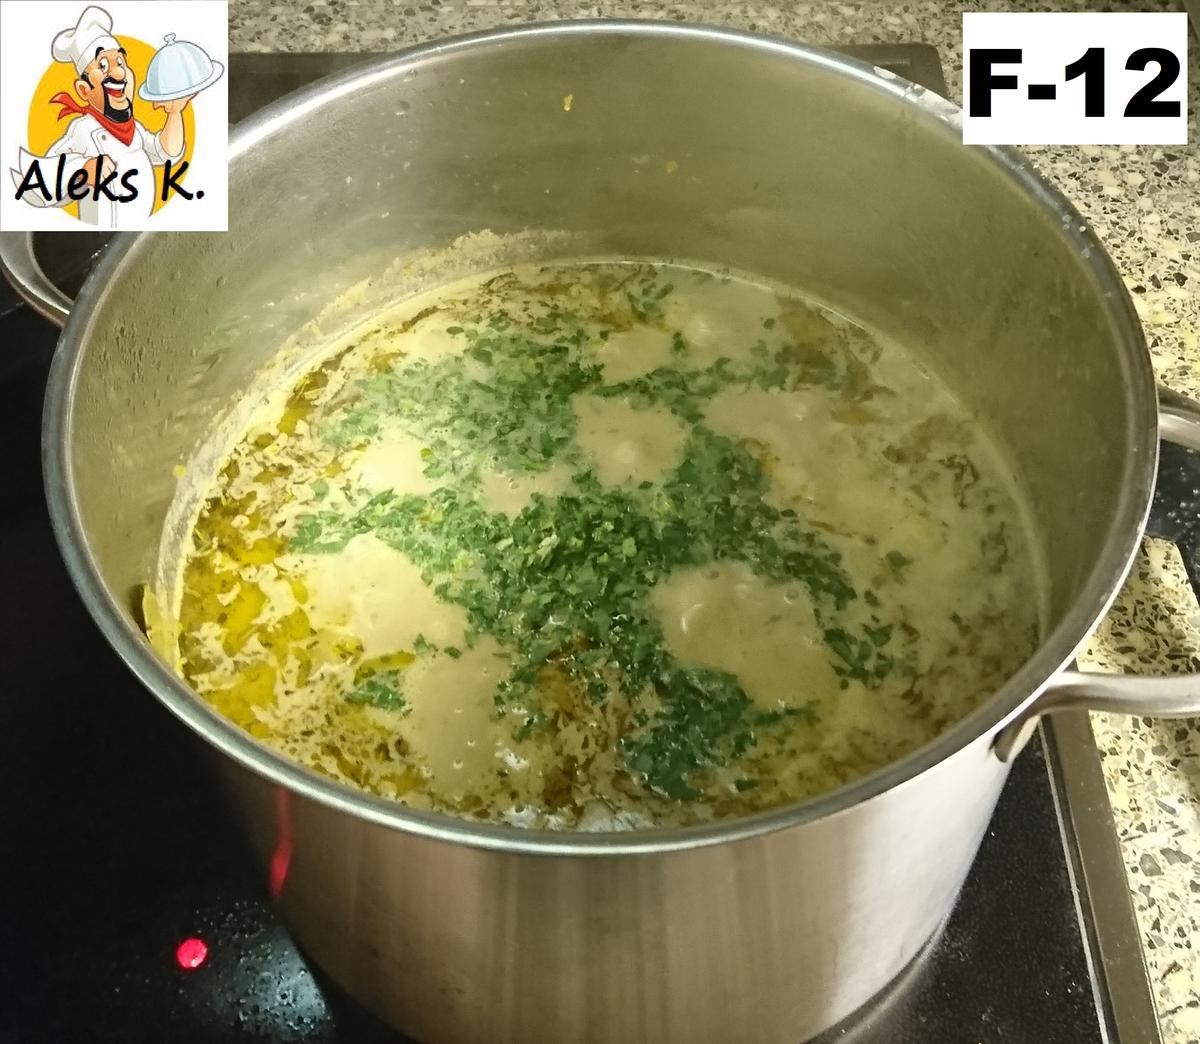 Schmelzkäse Suppe nach französische Art a La Aleks. - Rezept - Bild Nr. 13559